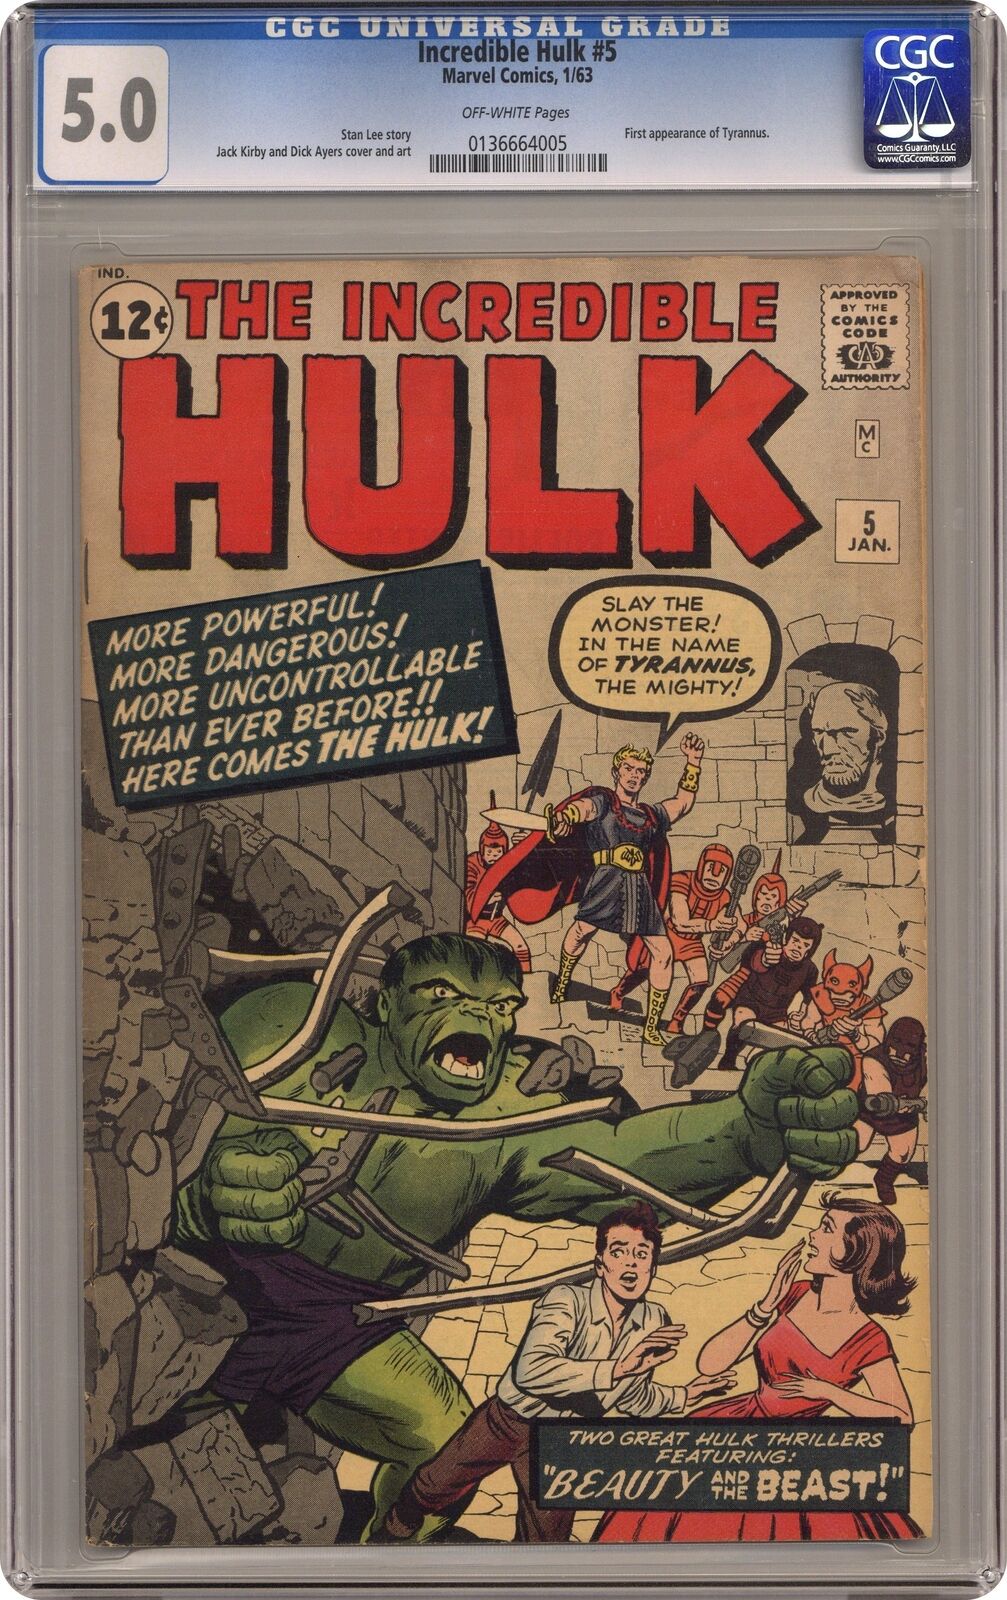 Incredible Hulk #5 CGC 5.0 1963 0136664005